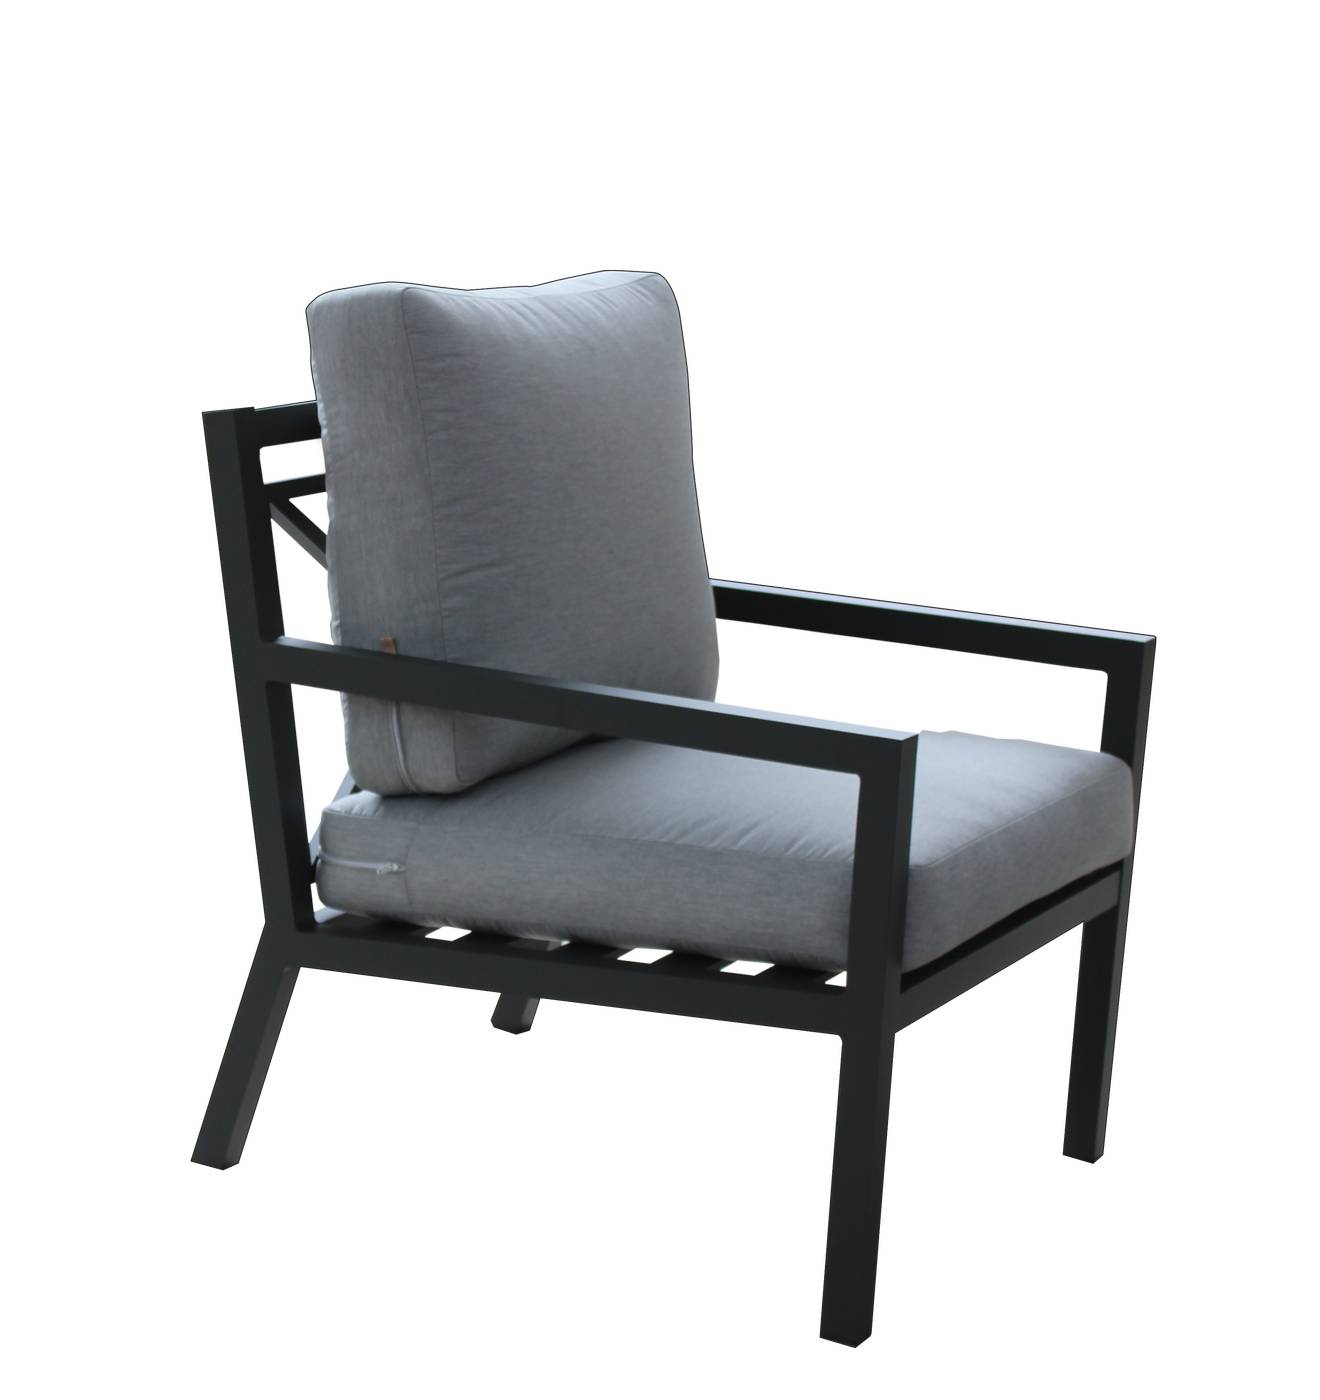 Set Aluminio Luxe Dounvil-9 - Conjunto de aluminio de lujo que incluye: un sofá dos plazas, dos sillones, una mesa de centro,  dos reposapiés y cojines.